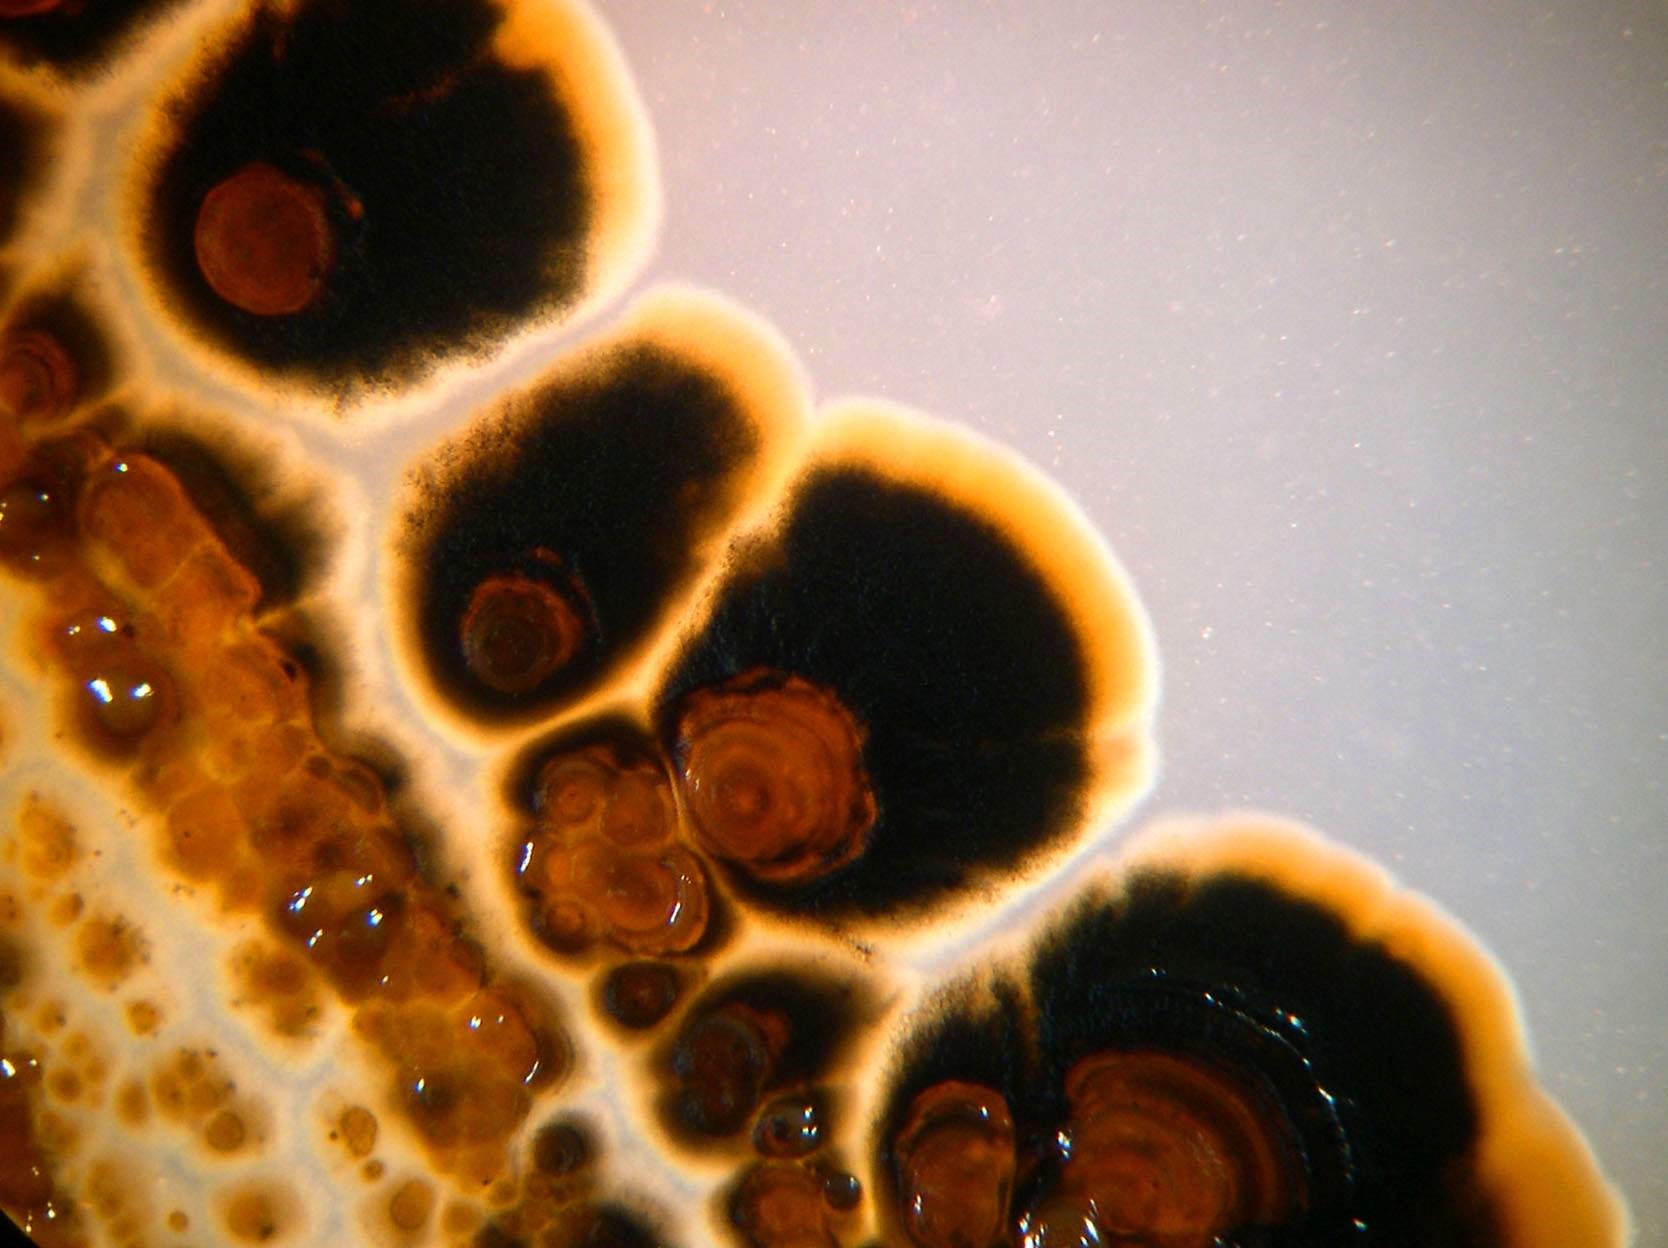 Salinispora tropica, sinh vật biển có khả năng điều trị các bệnh như ung thư. Ảnh: